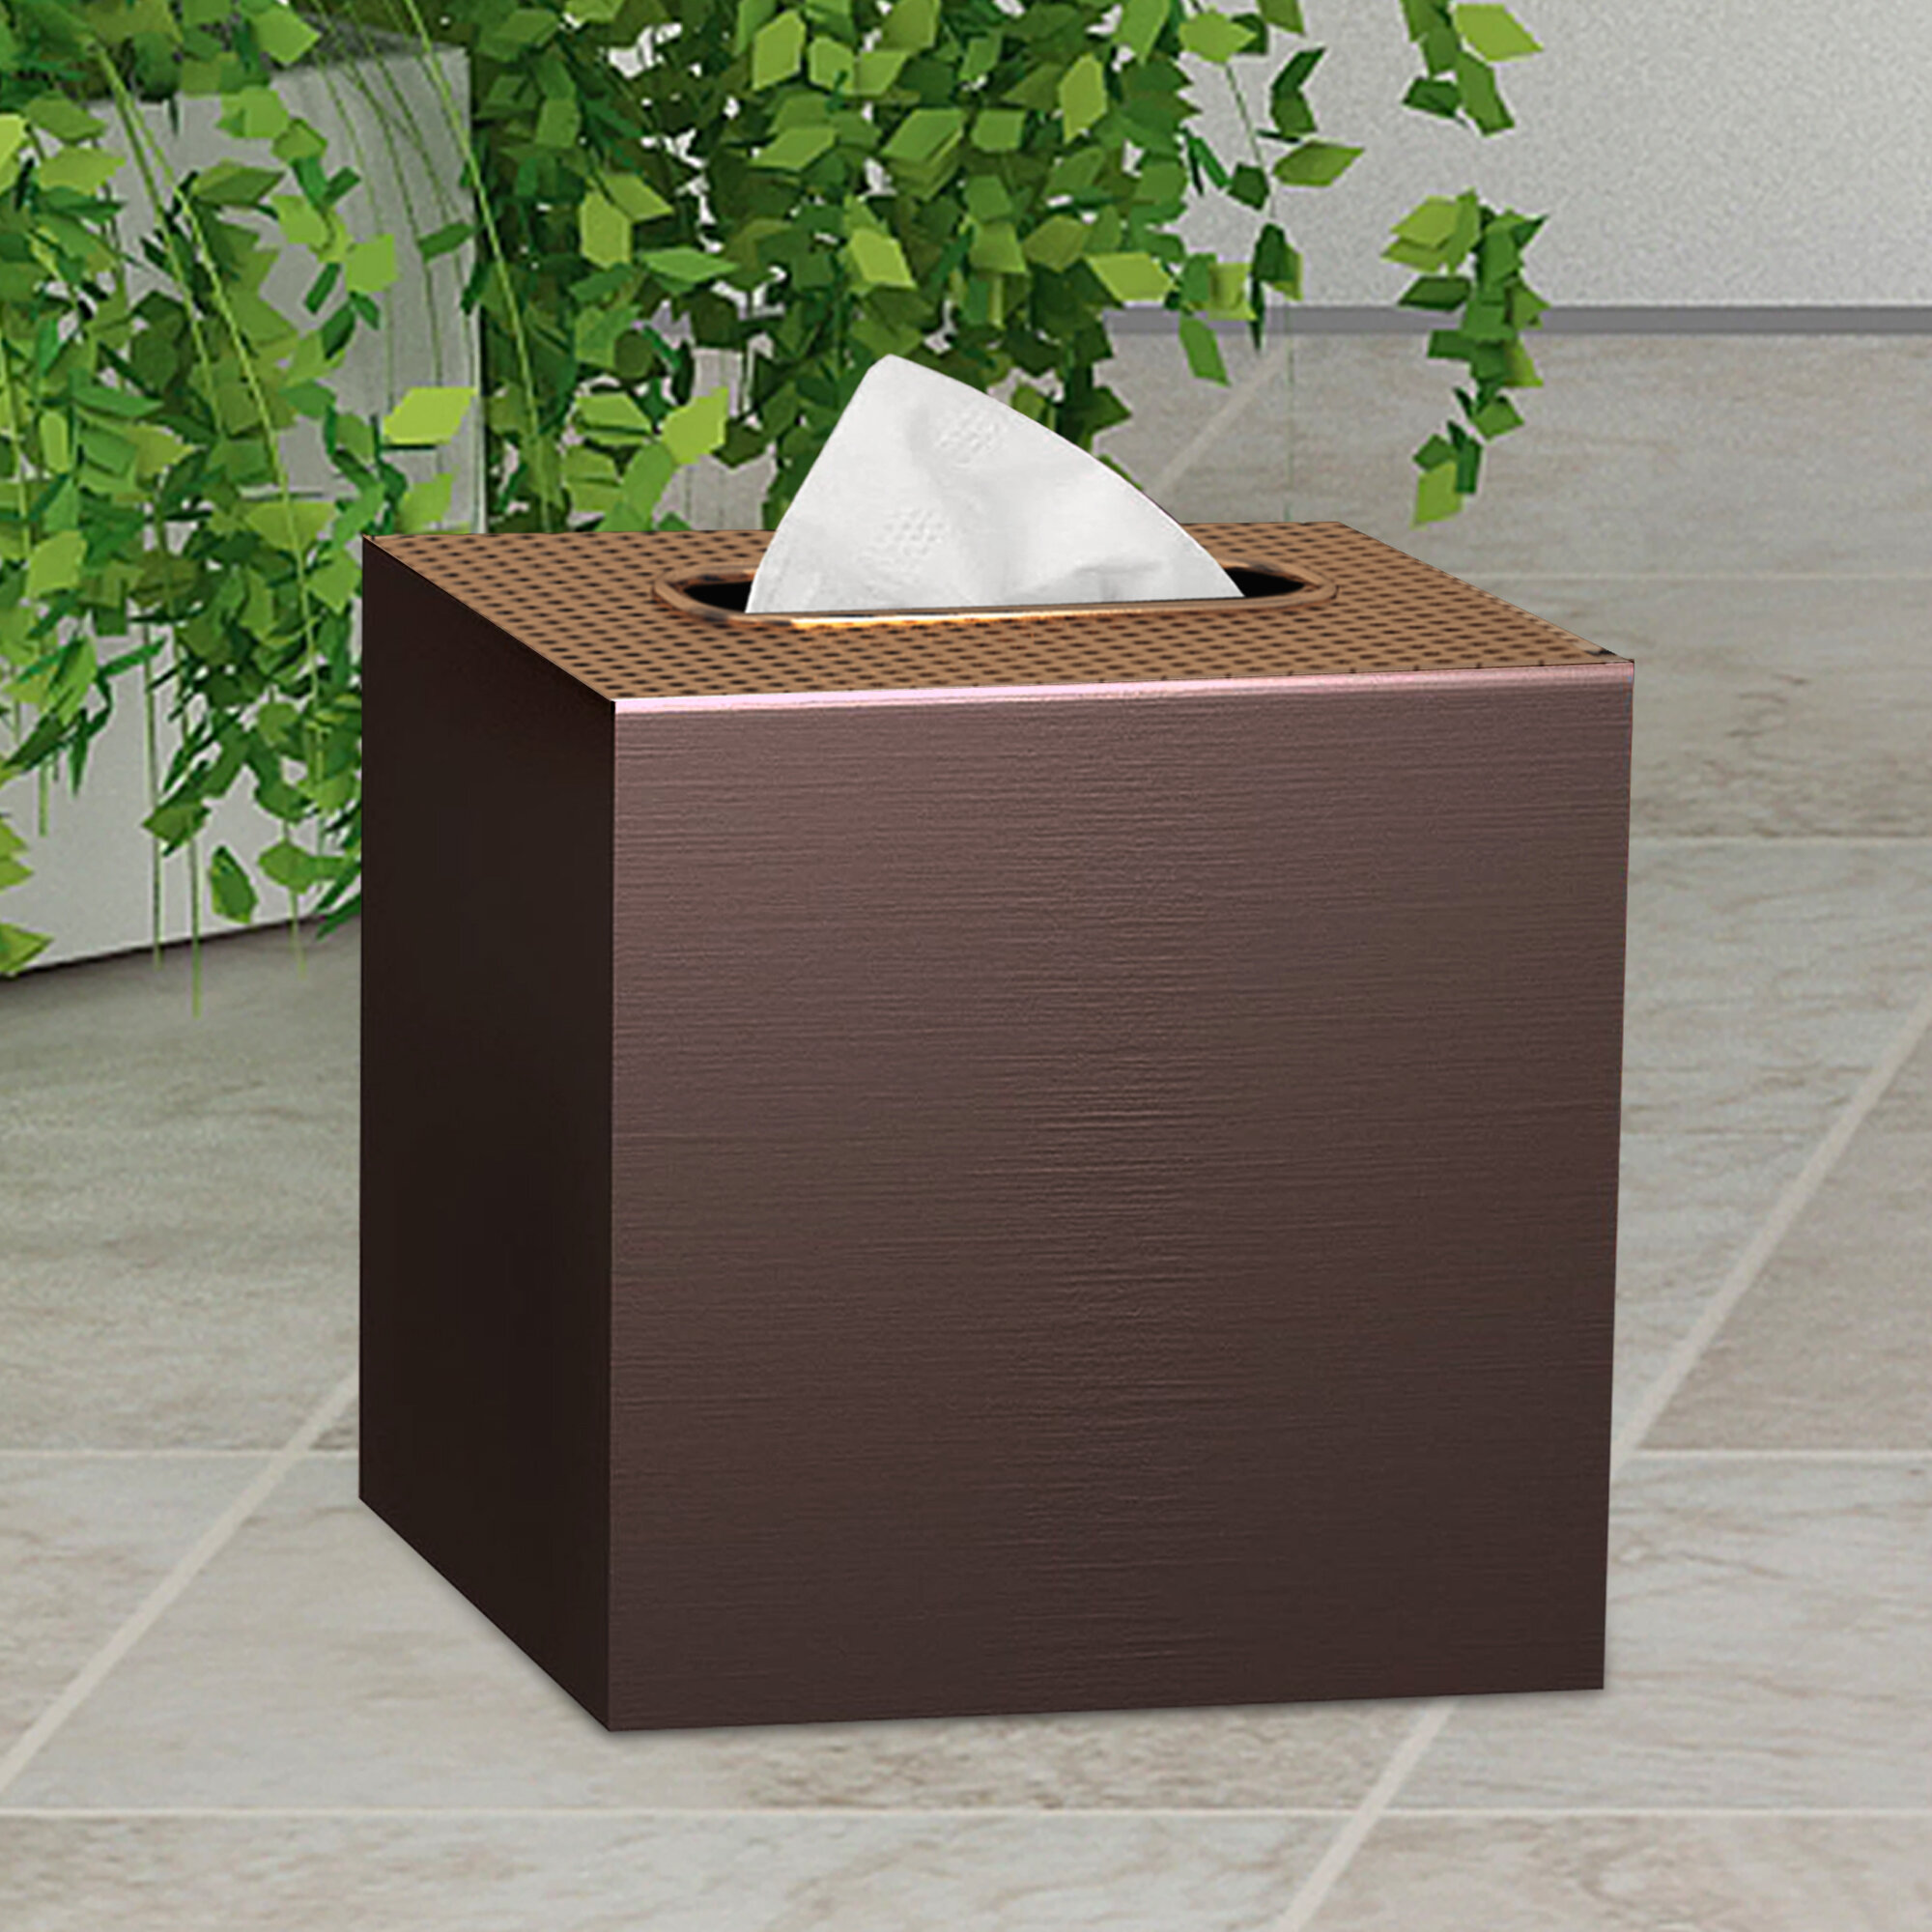 boutique tissue box cover